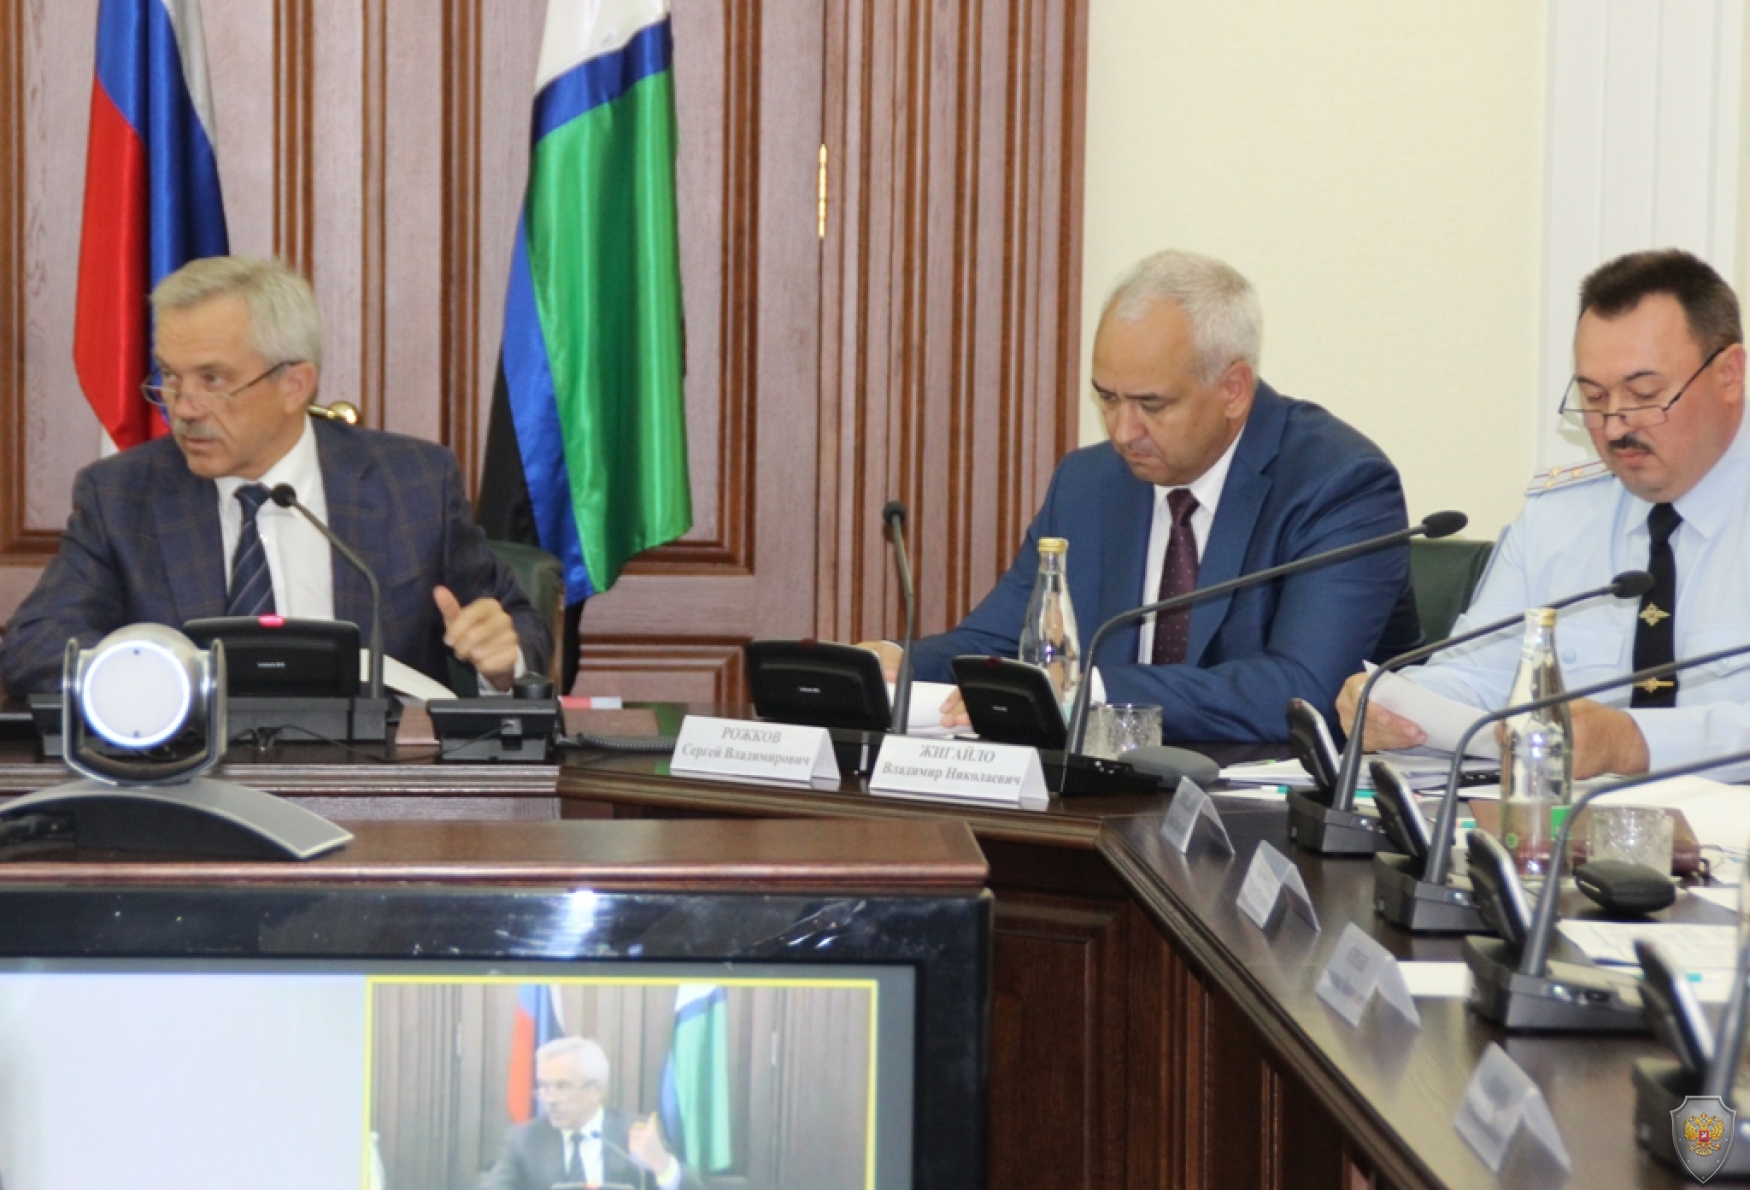 Под председательством губернатора проведено совместно заседание АТК и ОШ в Белгородской области